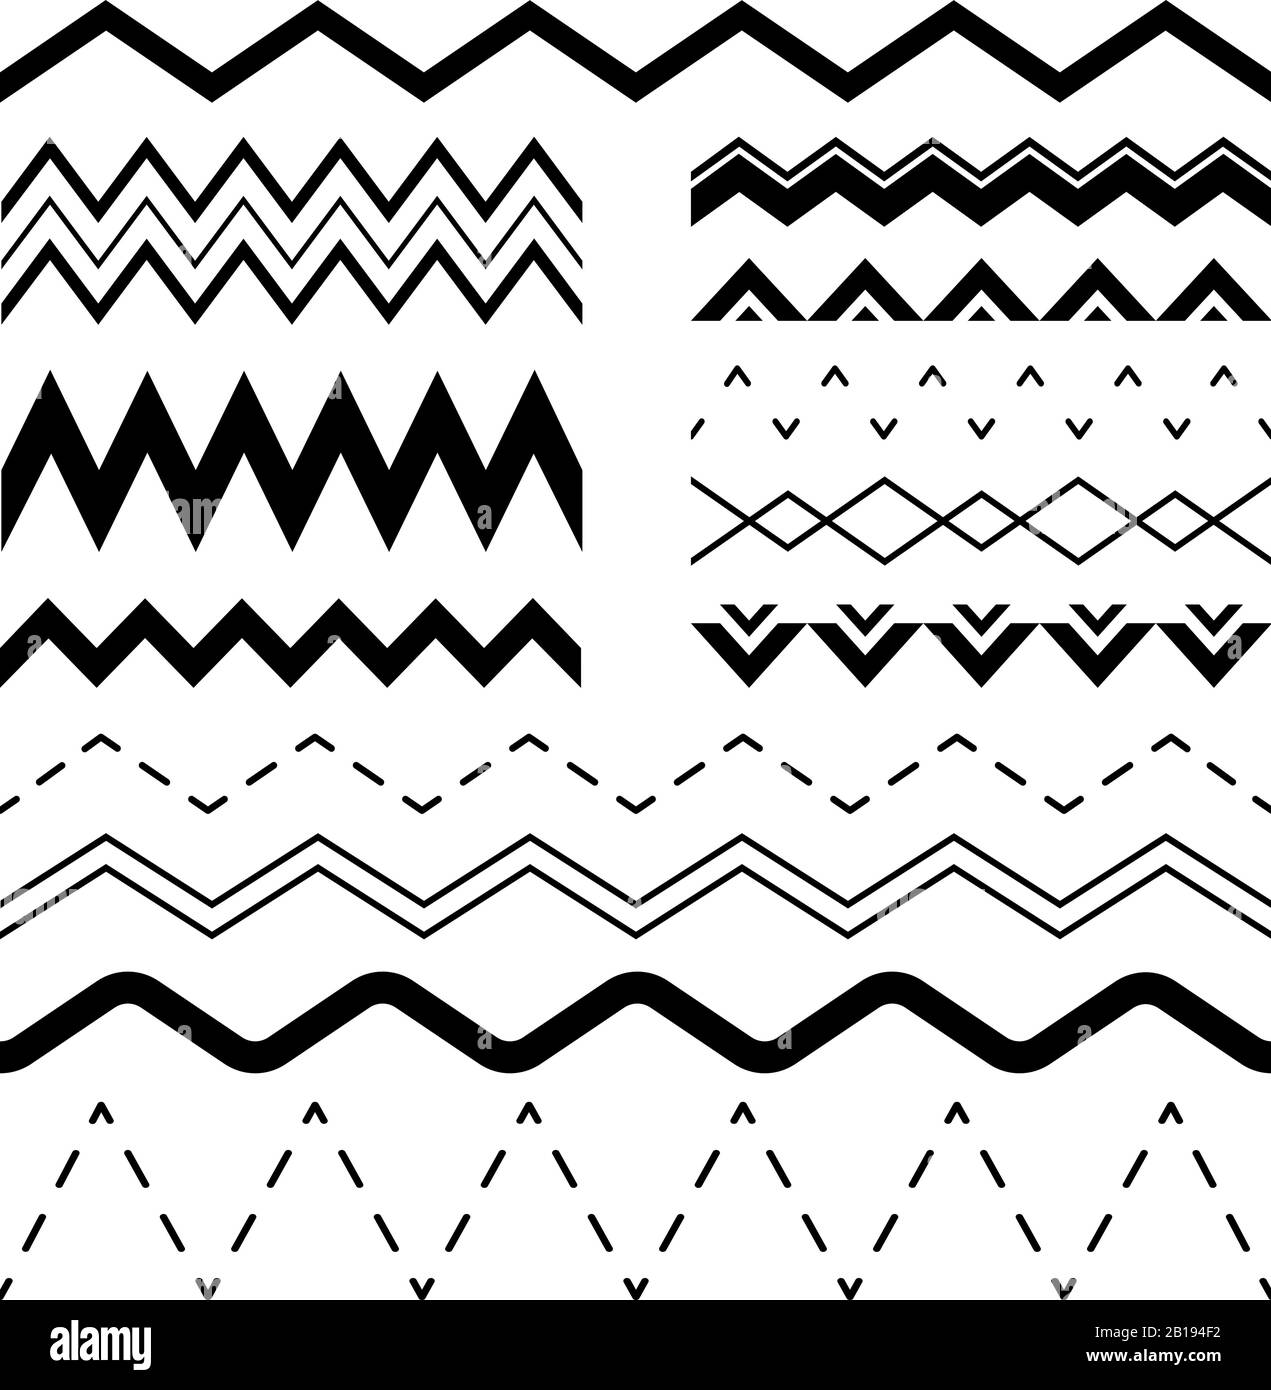 Ondulati zigzag. Onde ondulati, bordo dell'onda sinusoidale parallela e vettore dei fotogrammi a zig-zag sinusoidali insieme di illustrazioni senza giunture Illustrazione Vettoriale